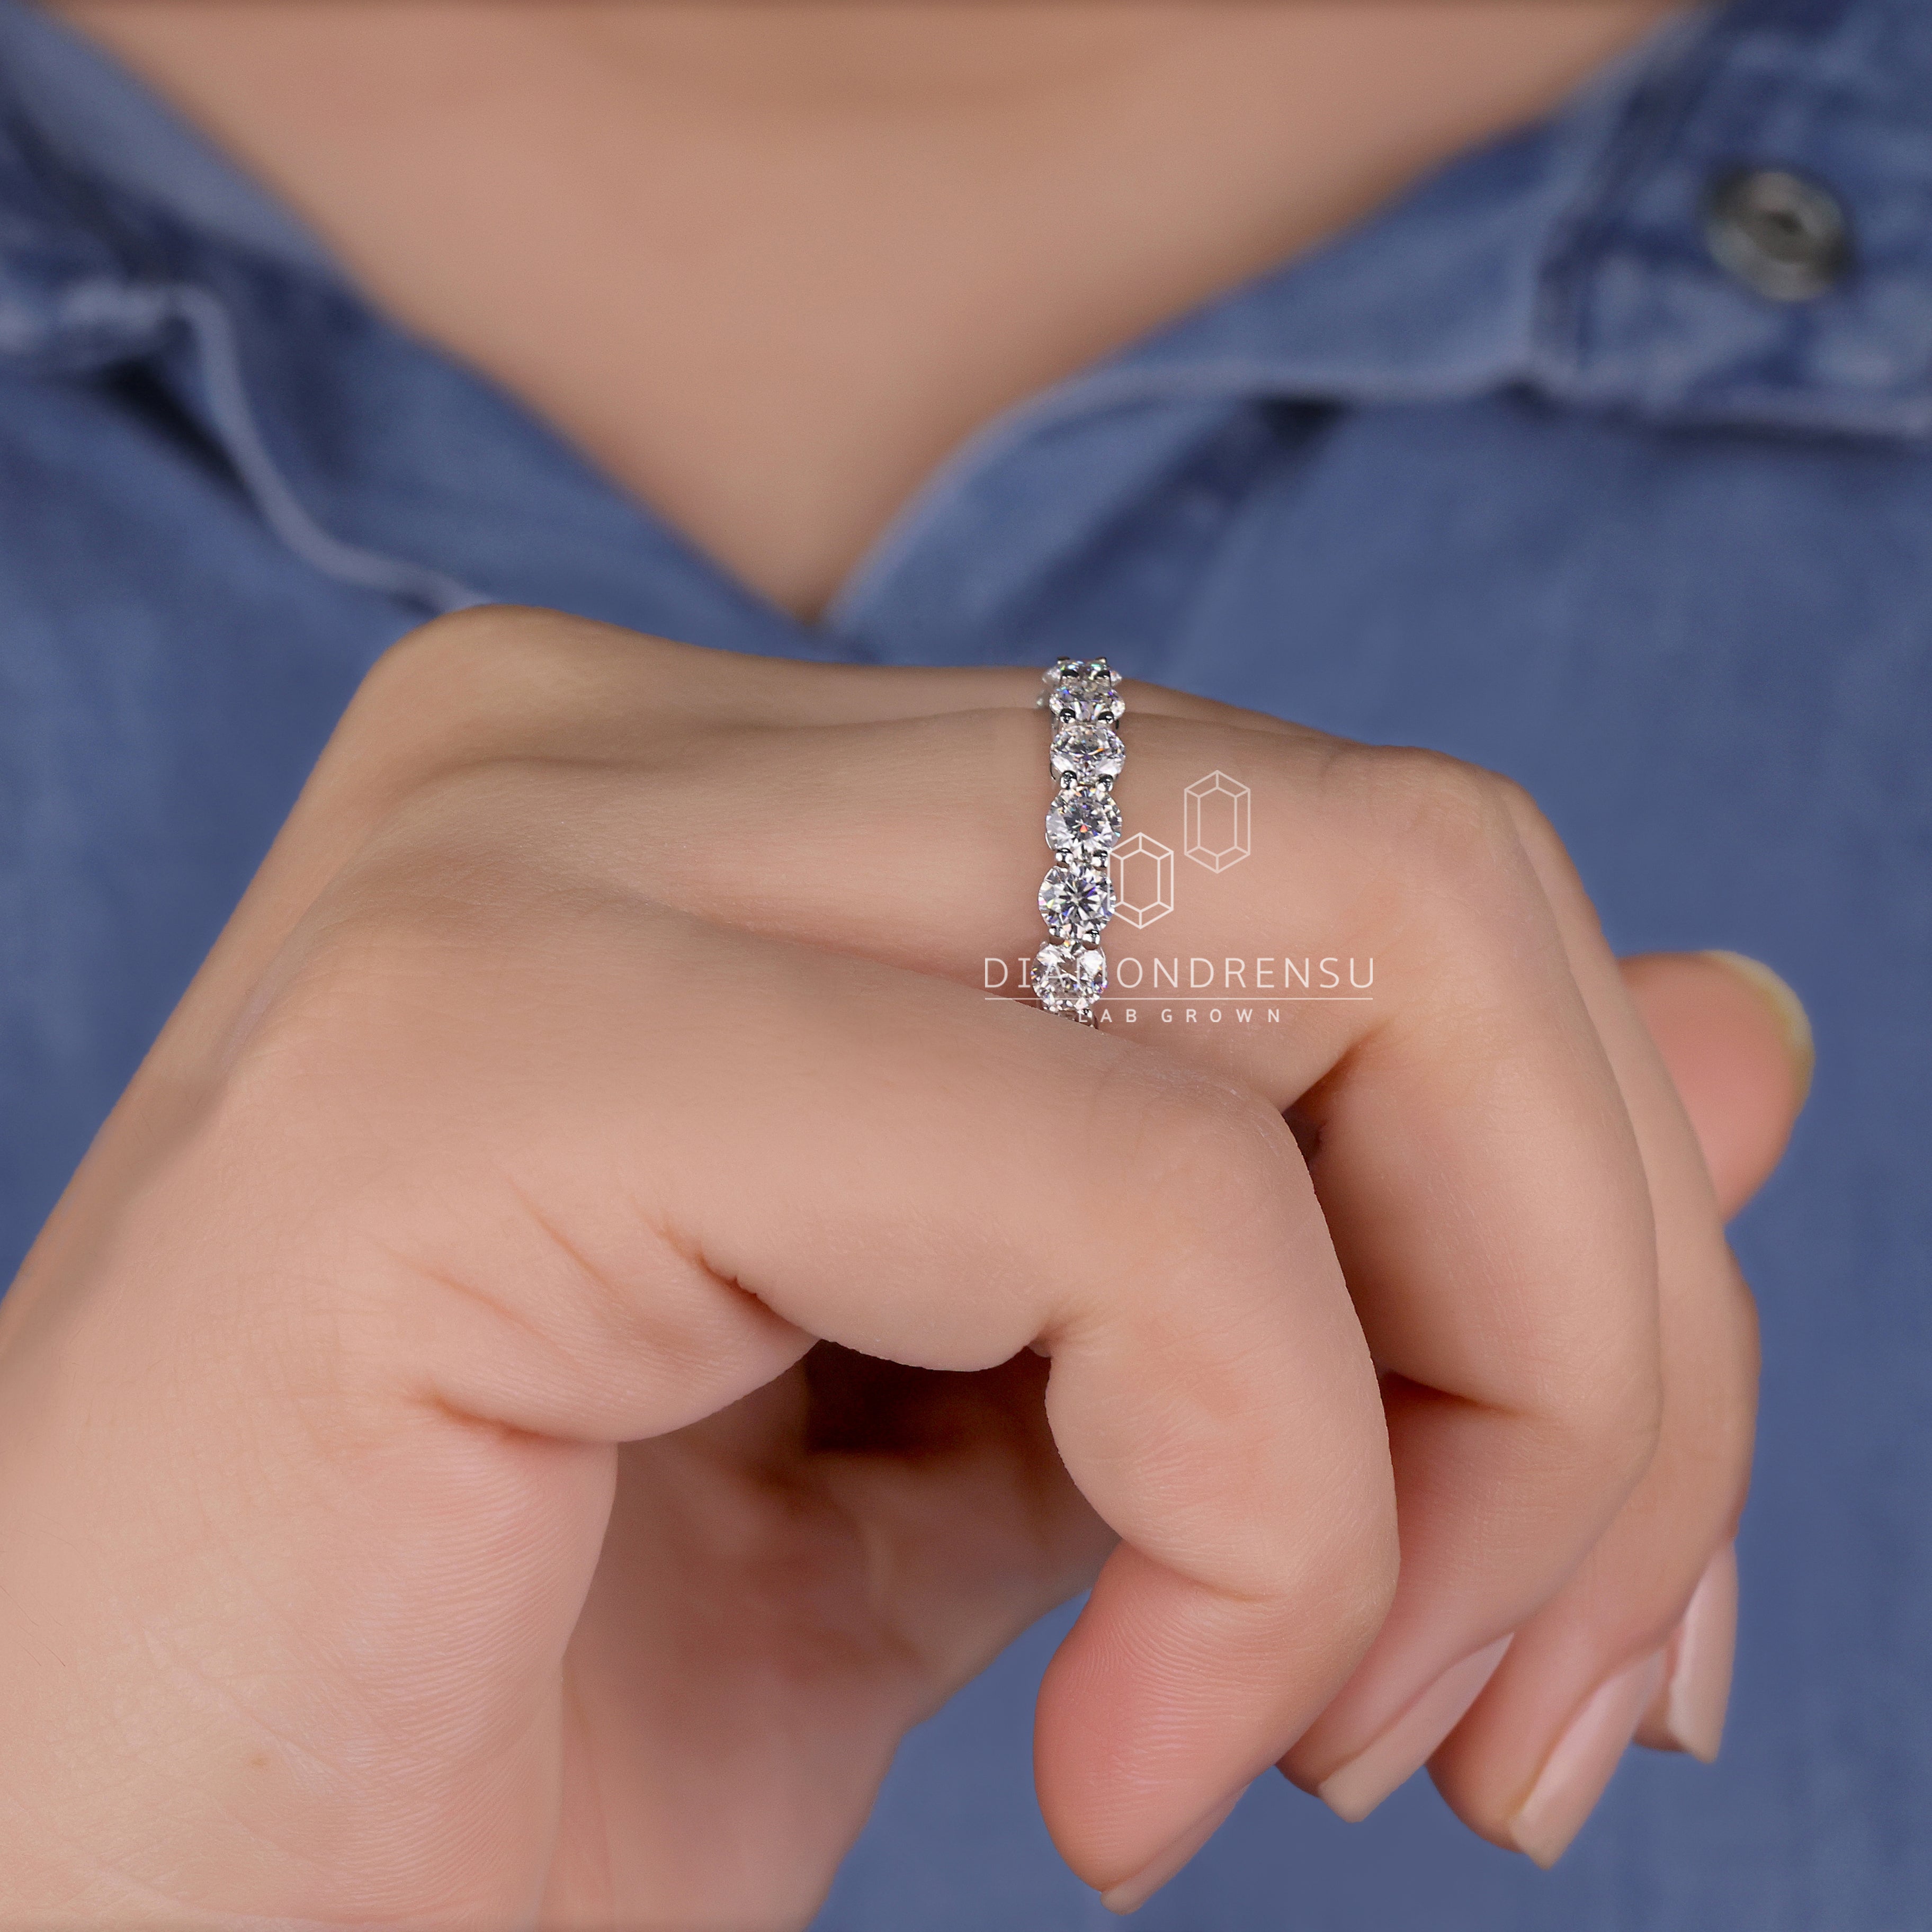 diamond jewelry - diamondrensu